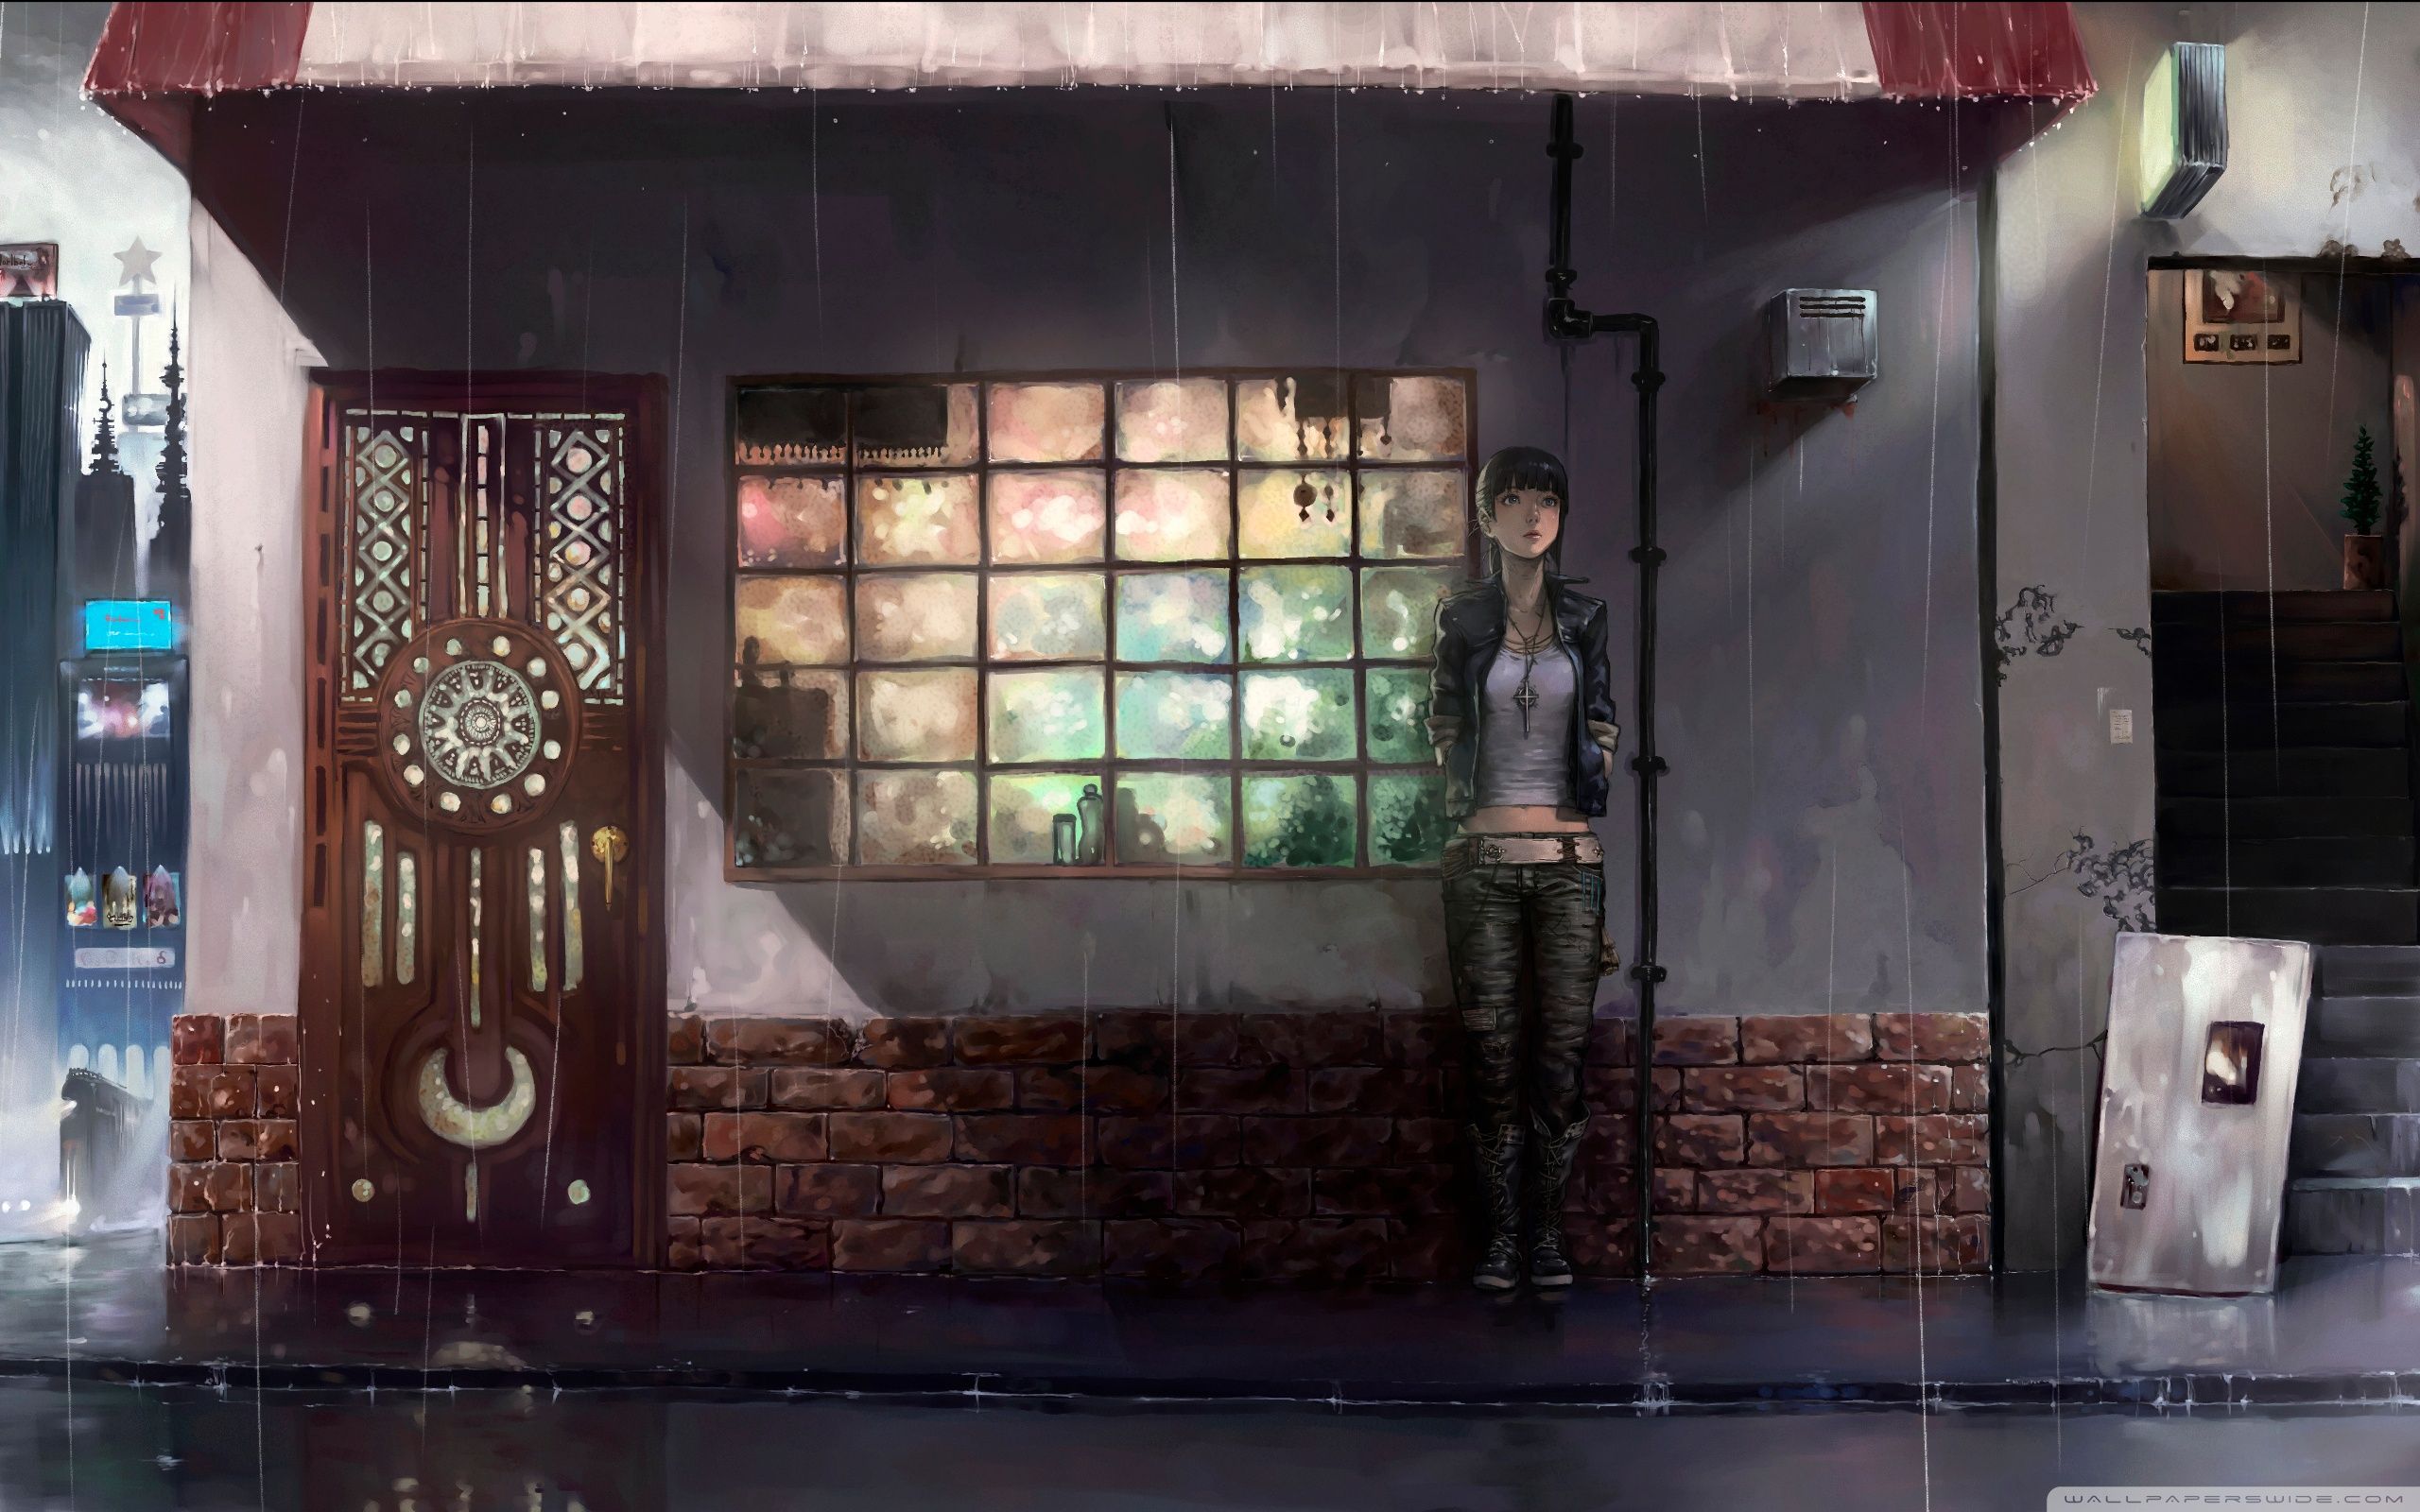 Raining Day Anime Ultra HD Desktop Background Wallpaper for 4K UHD TV, Tablet